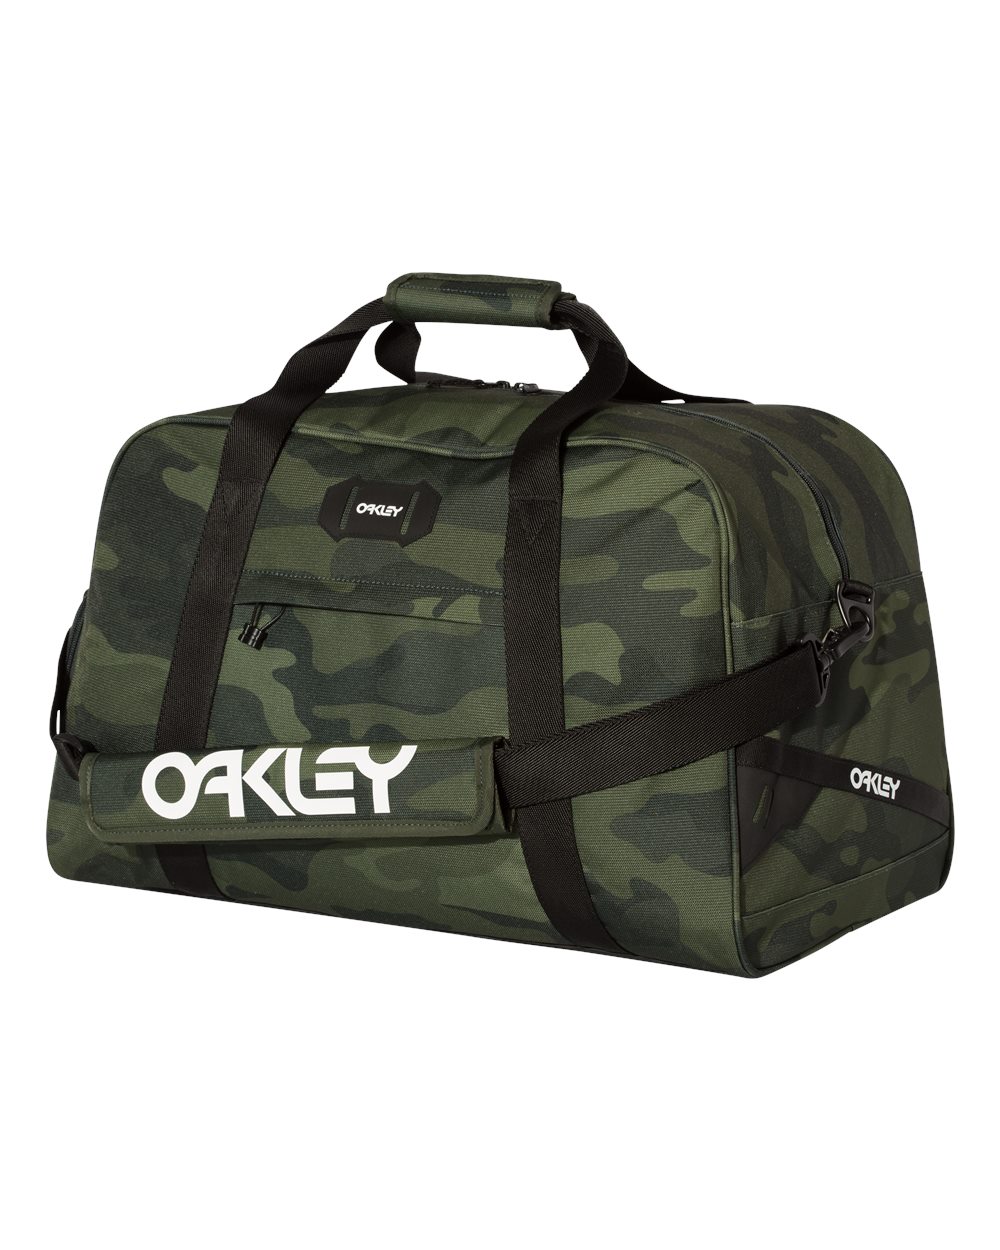 oakley duffel bag